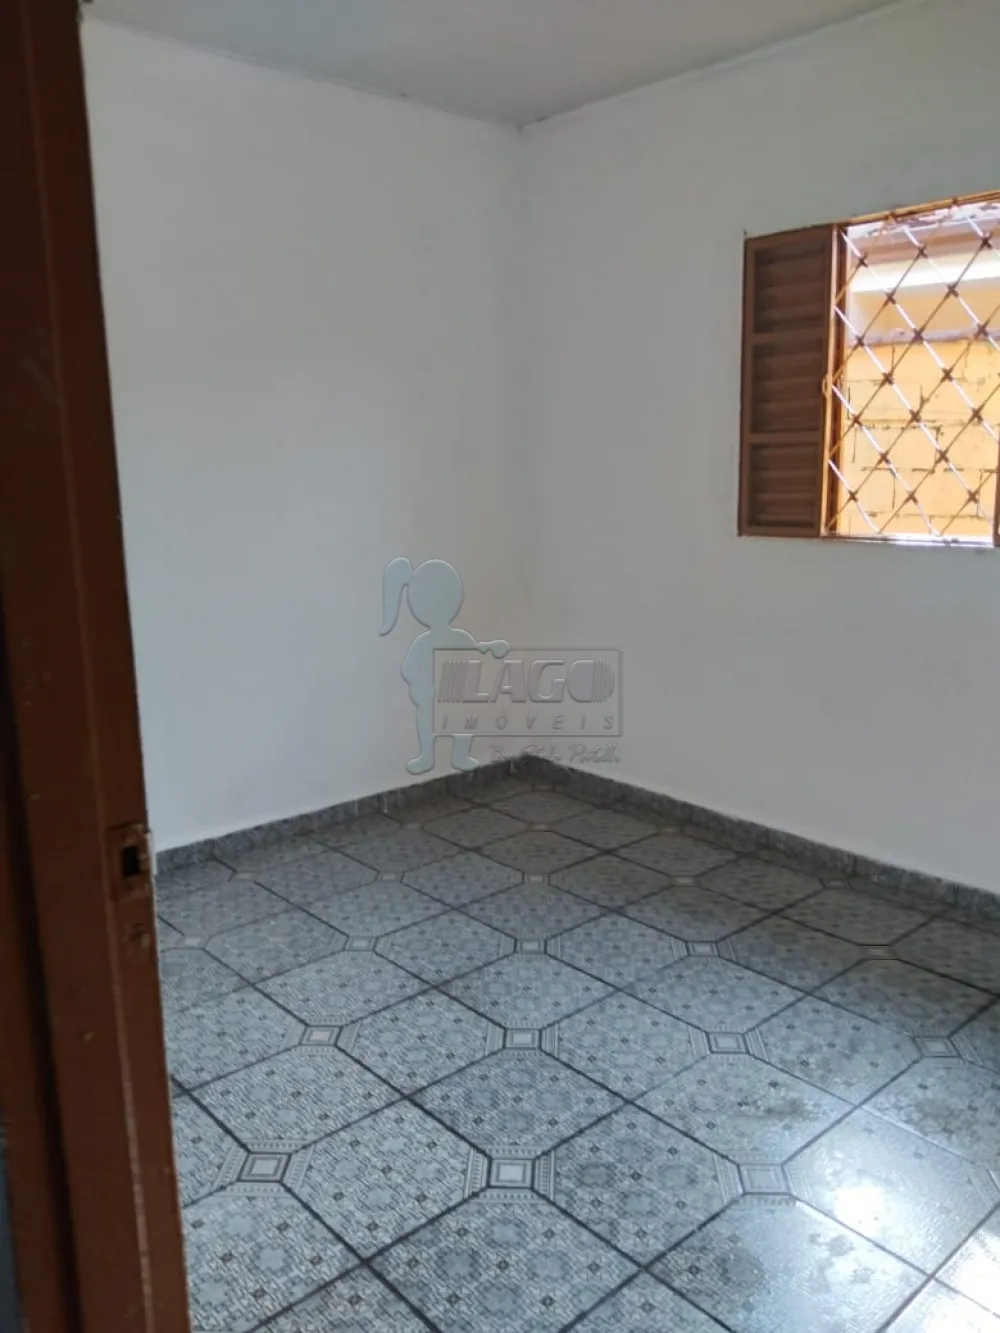 Alugar Casa / Padrão em Ribeirão Preto R$ 900,00 - Foto 5